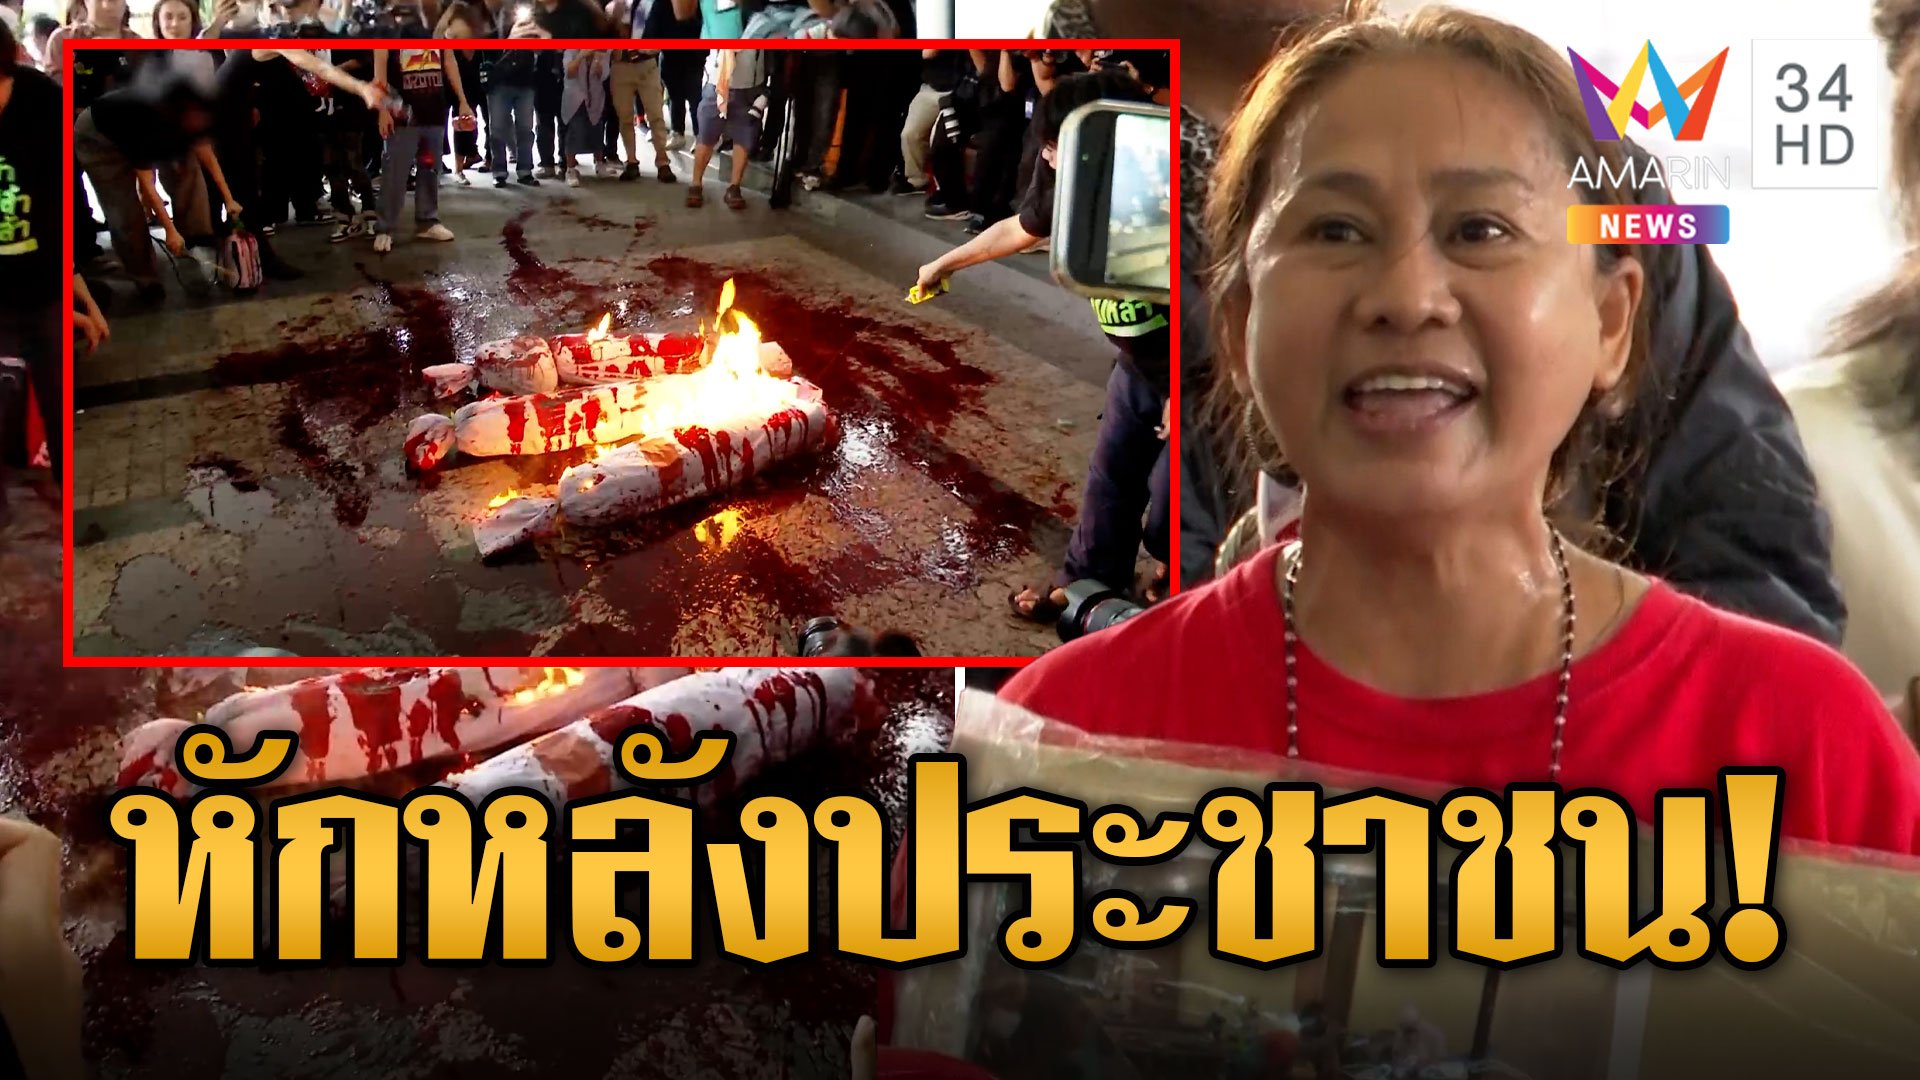 กลุ่มทะลุวังบุก "เพื่อไทย" สาดน้ำแดงเผาหุ่นฟางหน้าพรรค คนเสื้อแดงฉะเจ็บกว่าผัวมีชู้! | ข่าวอรุณอมรินทร์ | 3 ส.ค. 66 | AMARIN TVHD34